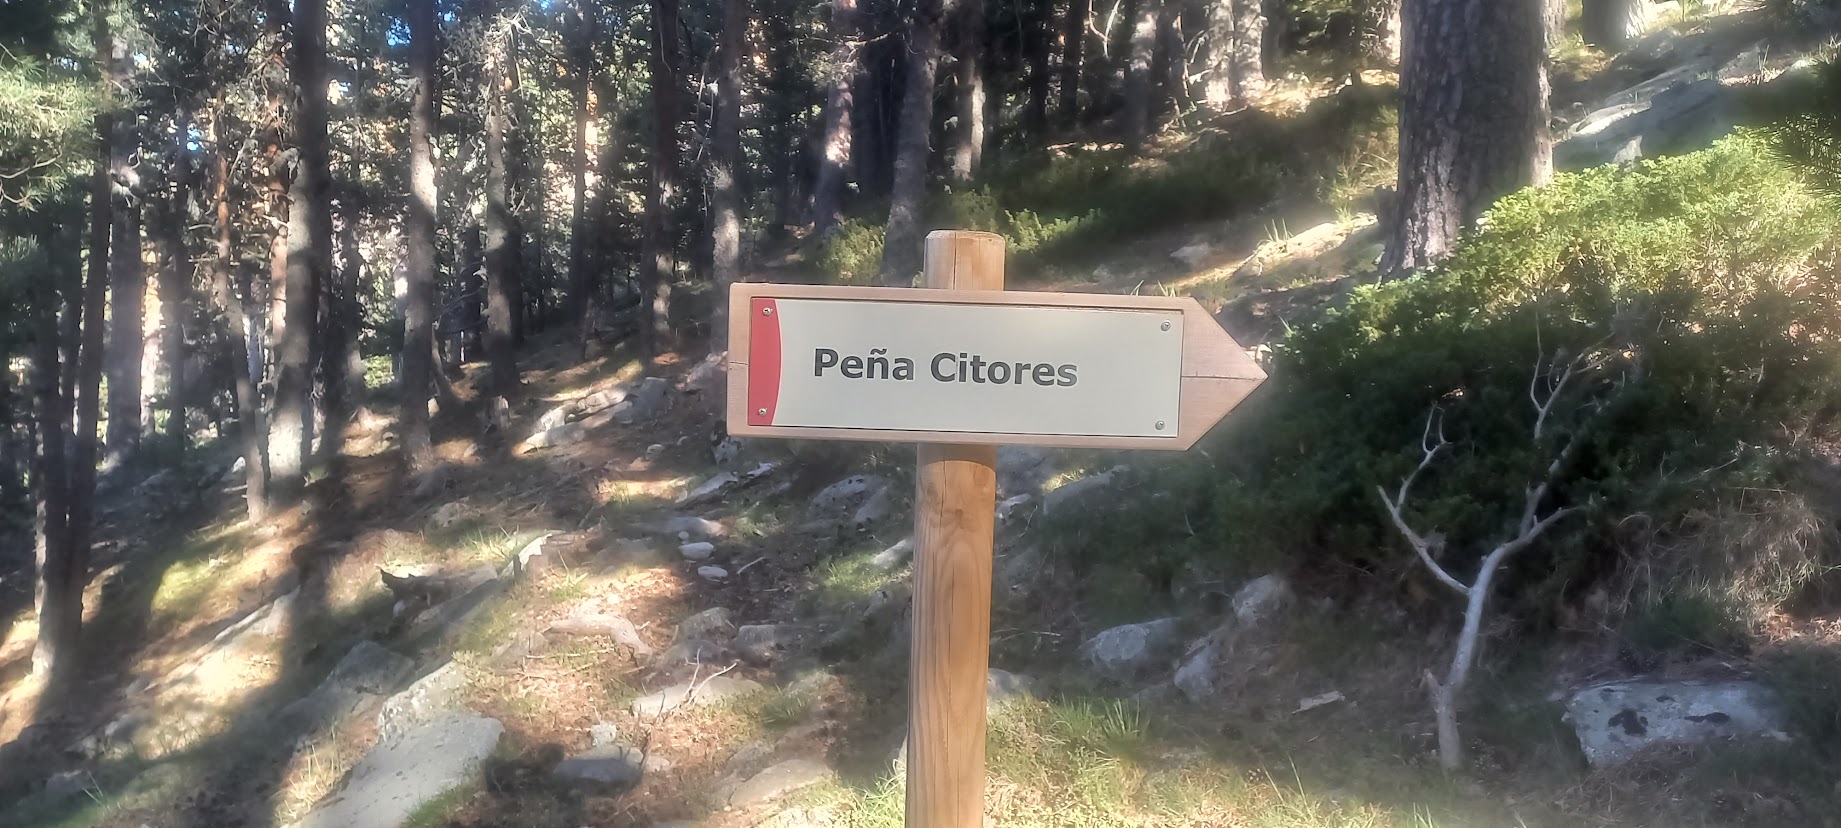 El topónimo Citores se repite en otros lugares, a menudo montañosos, como es natural. Aquí Peña Citores, en el Real Sitio  de San Ildefonso (Segovia). Foto del autor.